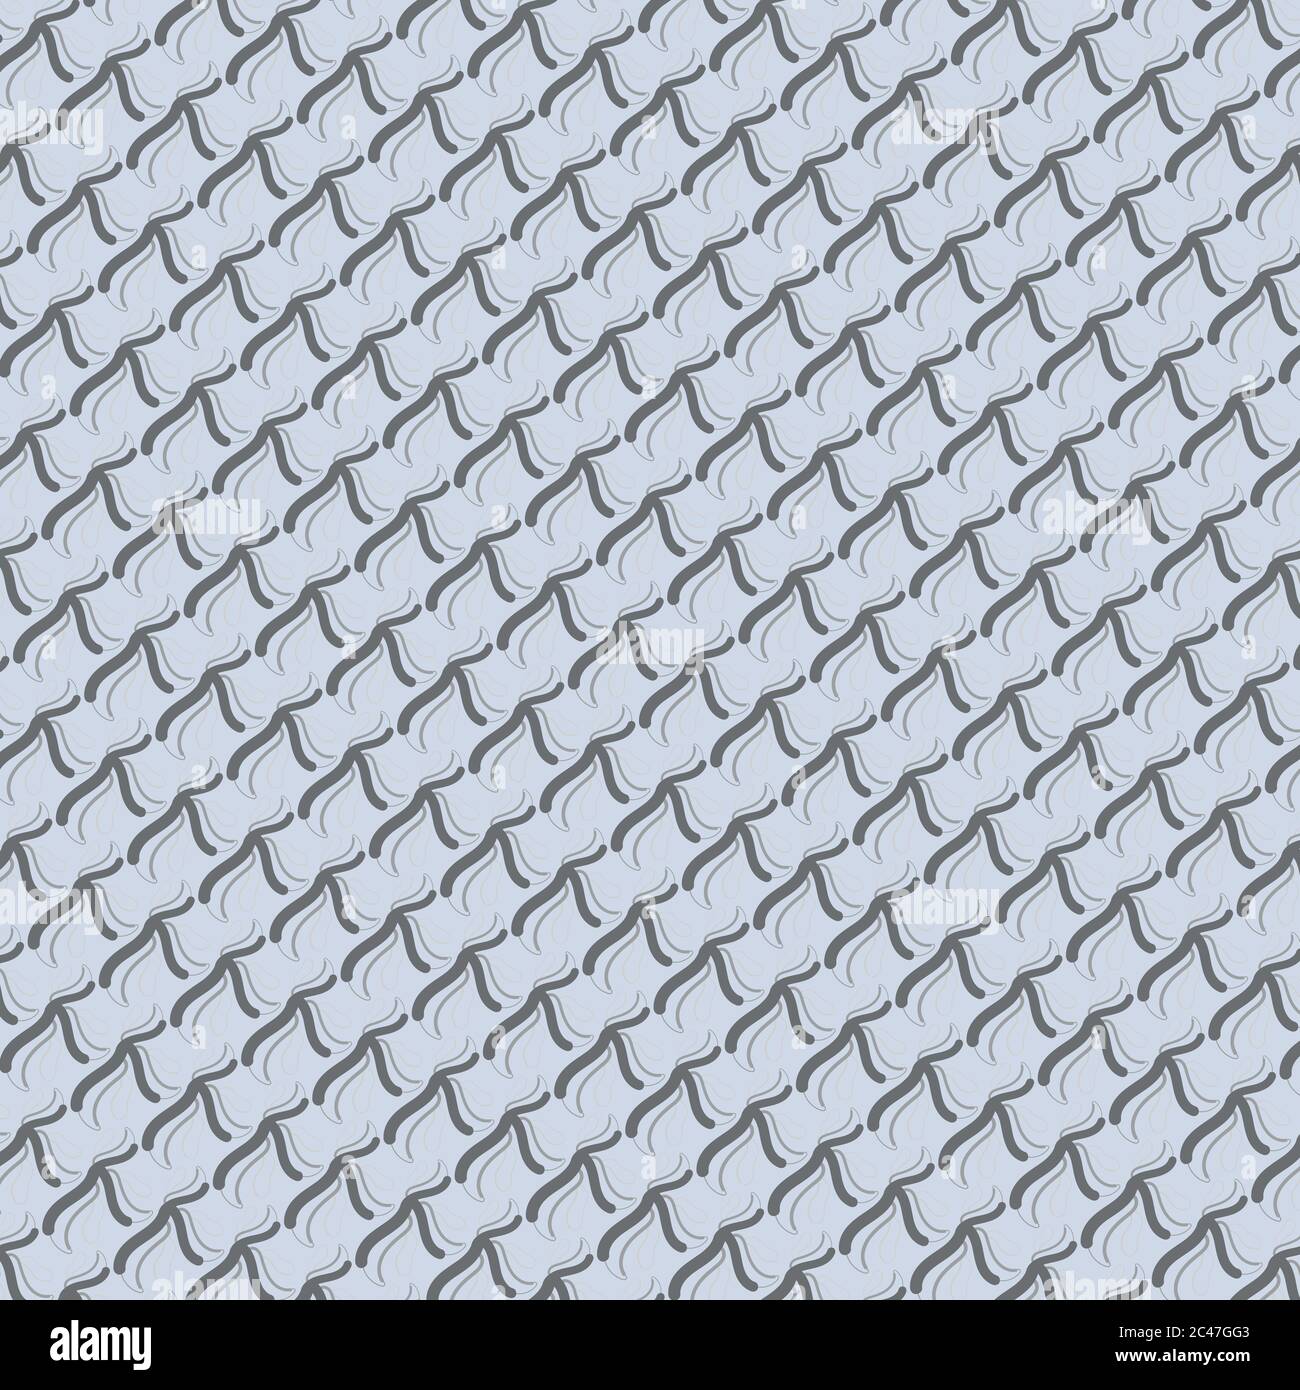 Arrière-plan gris abstrait avec un motif semblable à celui de l'ardoise sur le toit Illustration de Vecteur